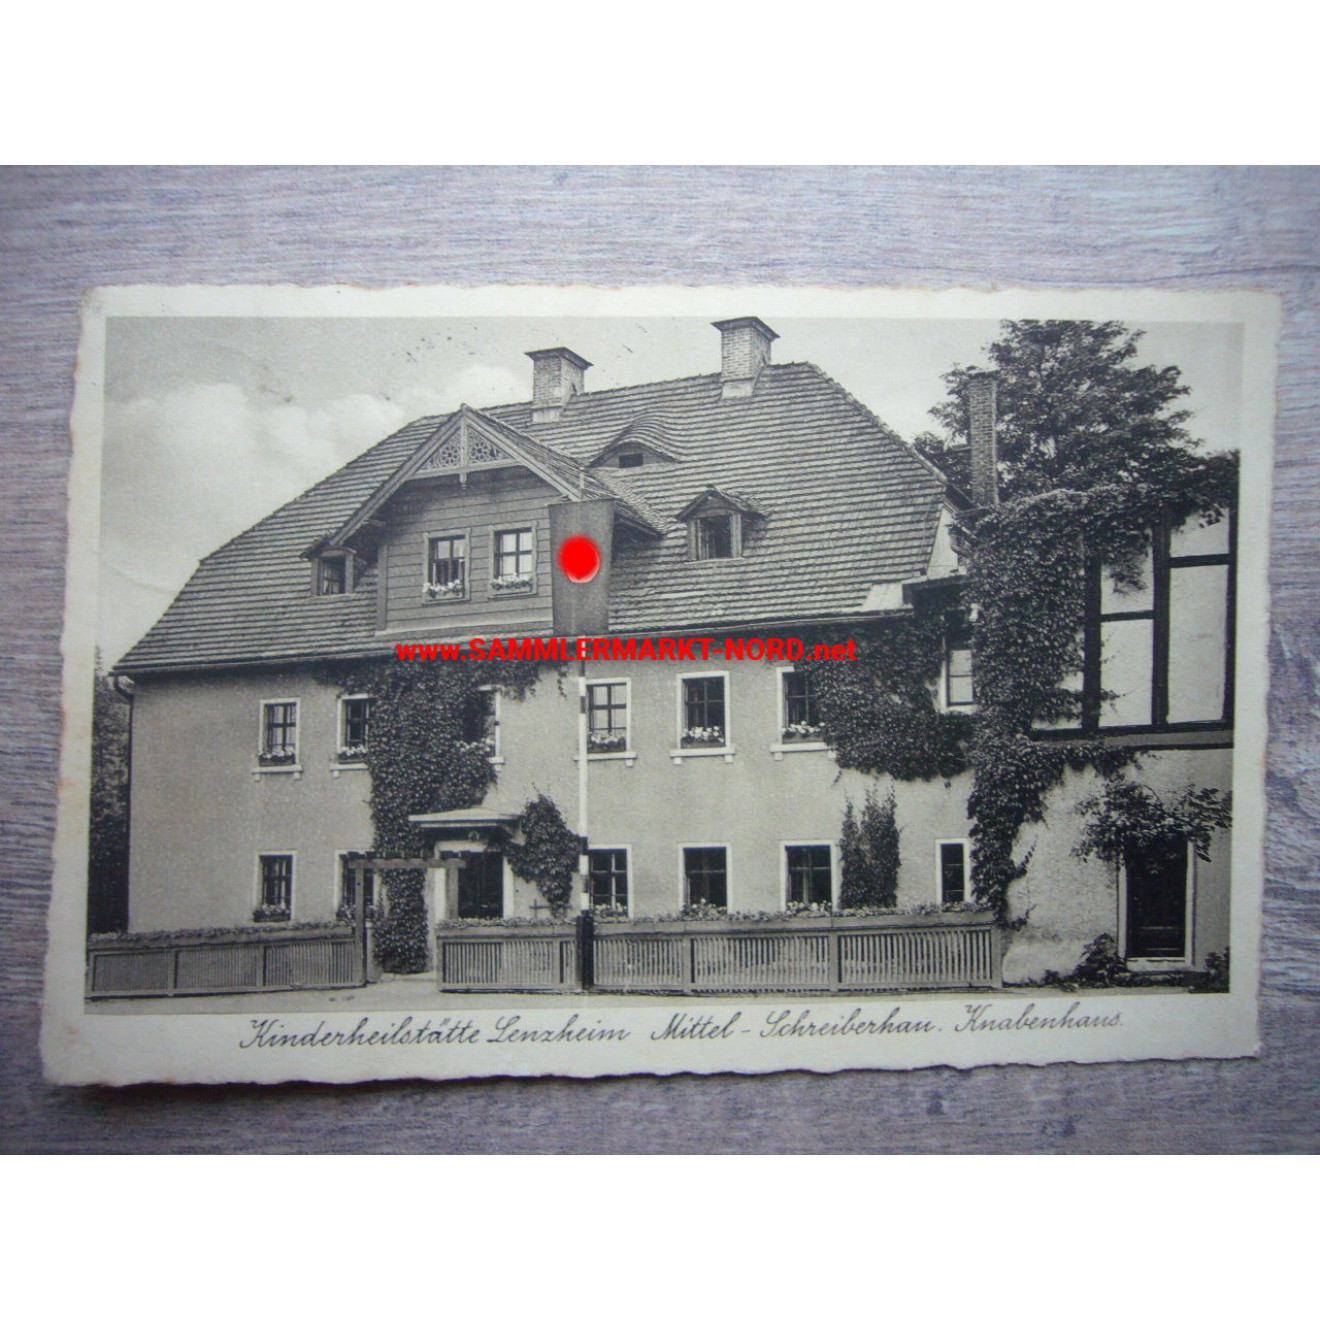 Children's sanatorium Lenzheim, central Schreiberhau with a swastika flag - postcard